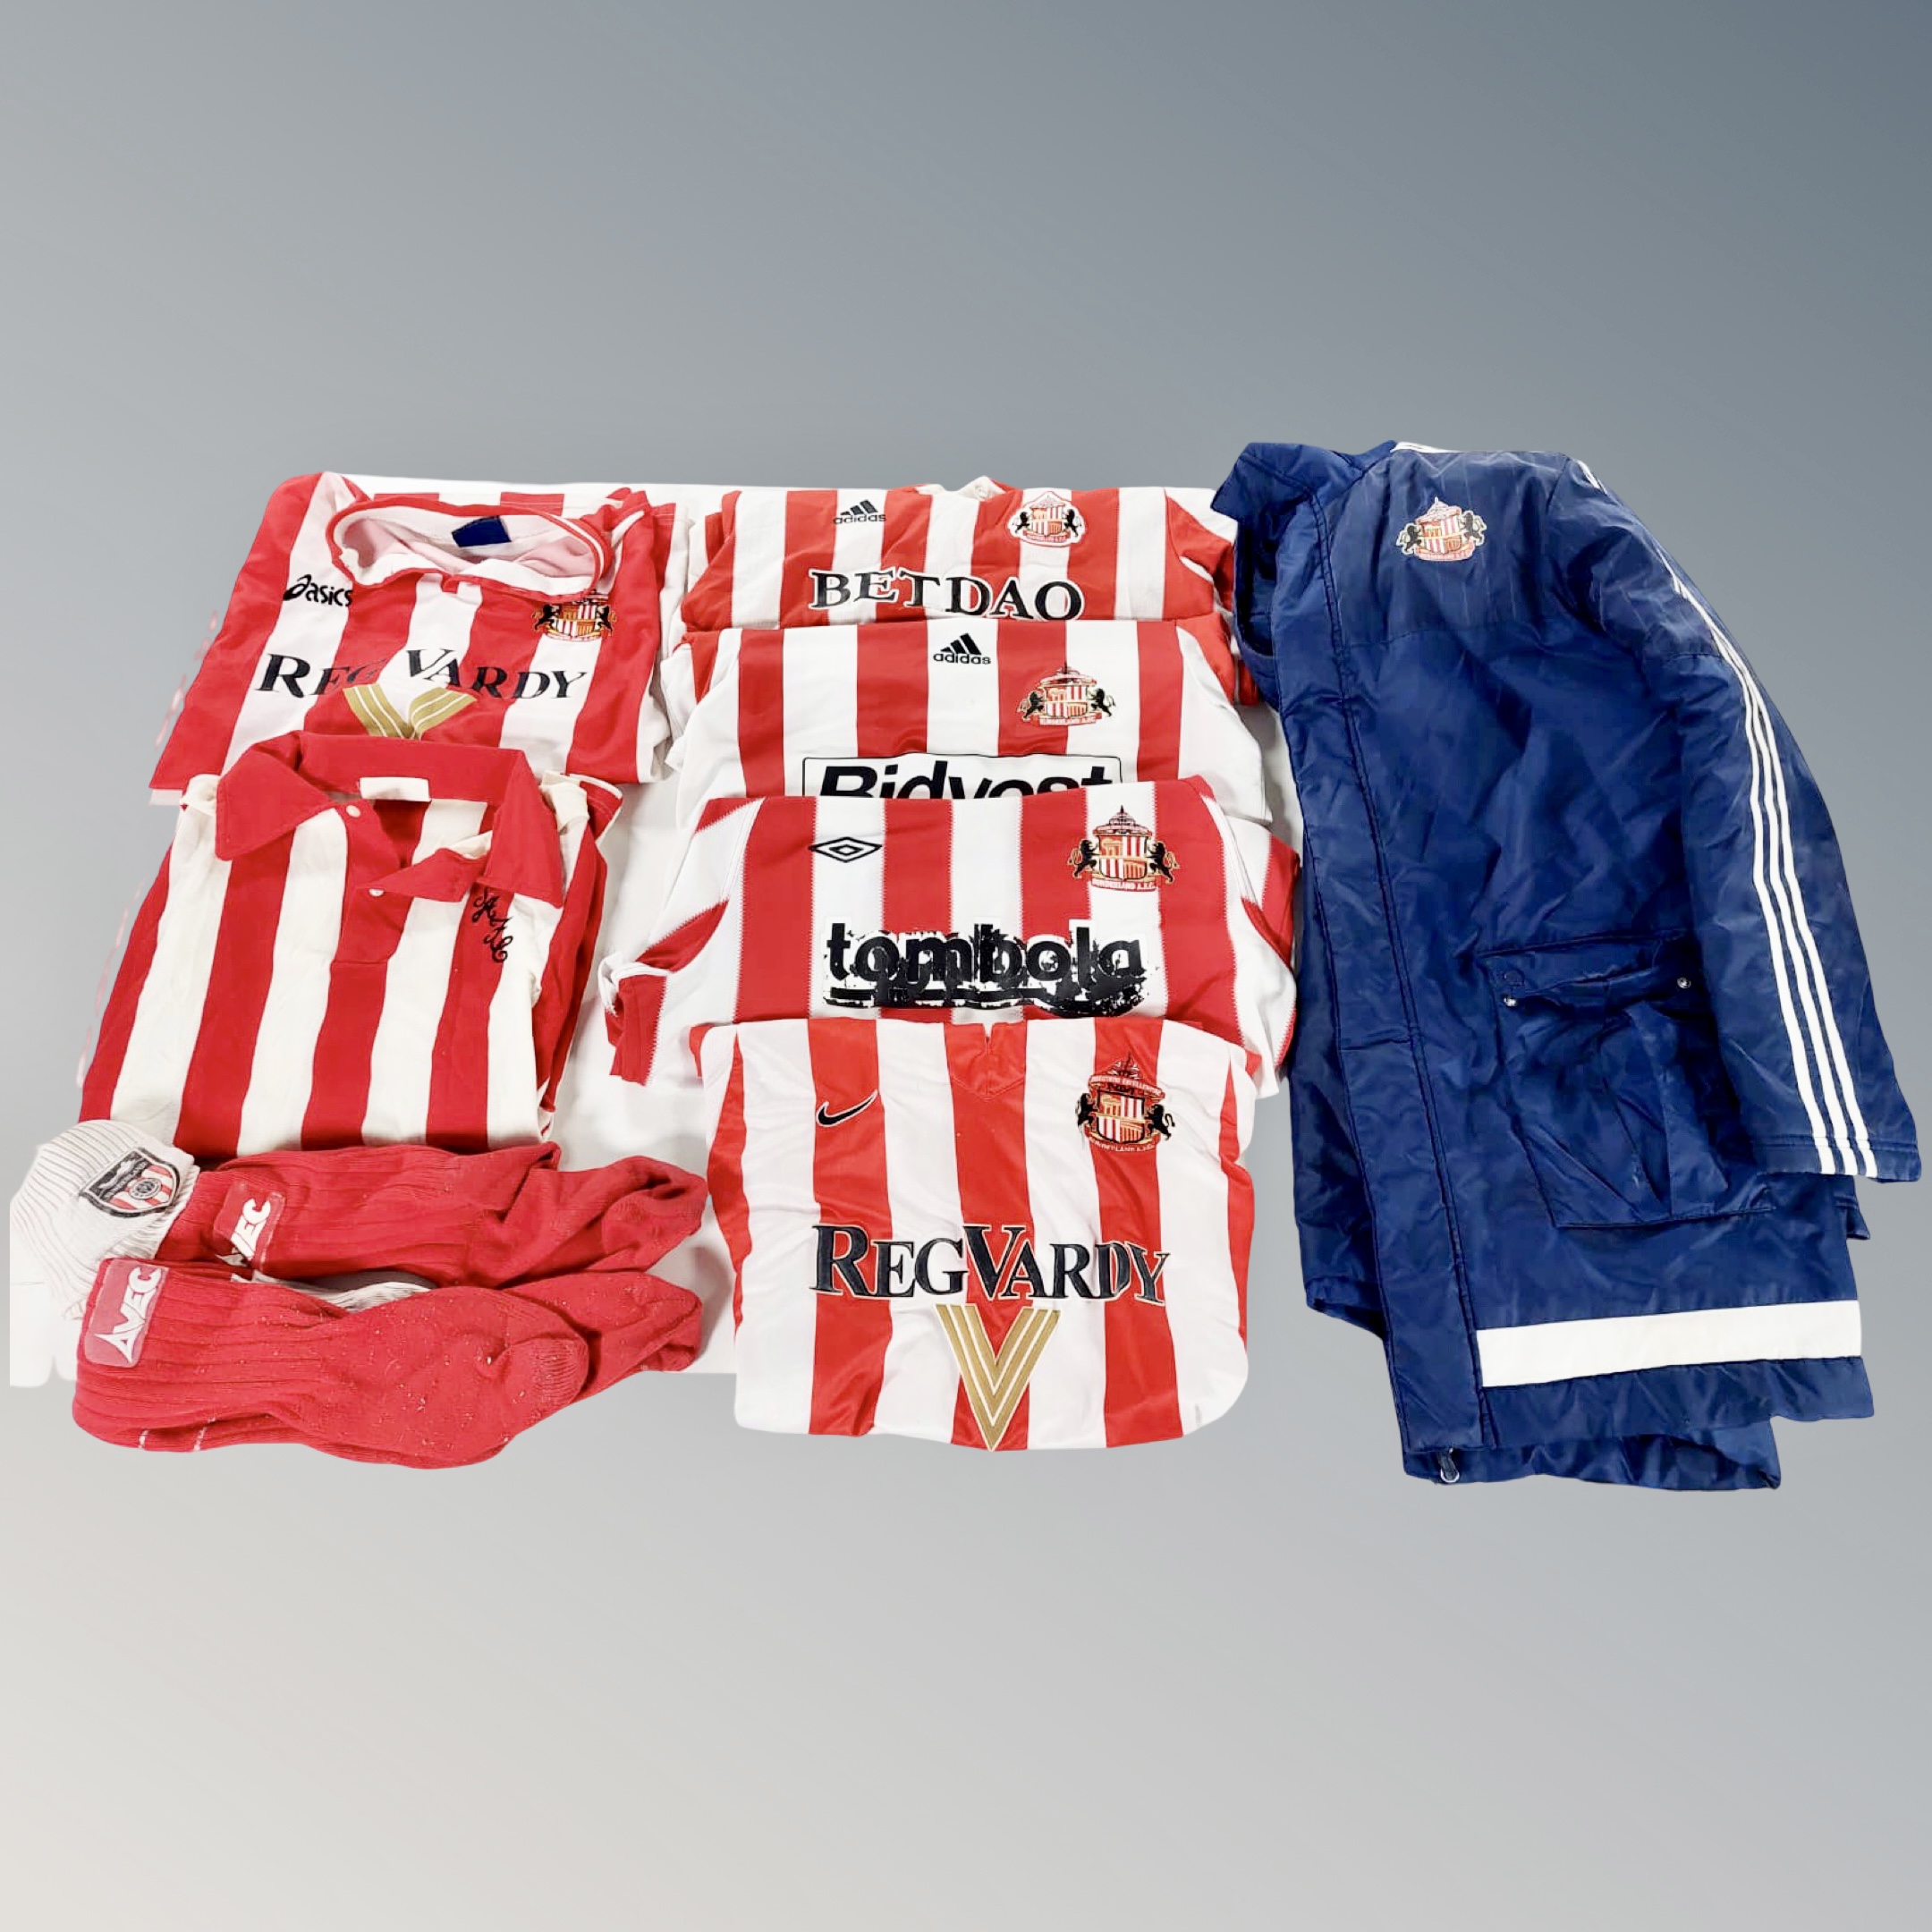 A box of Sunderland AFC clothing : socks, shirts,